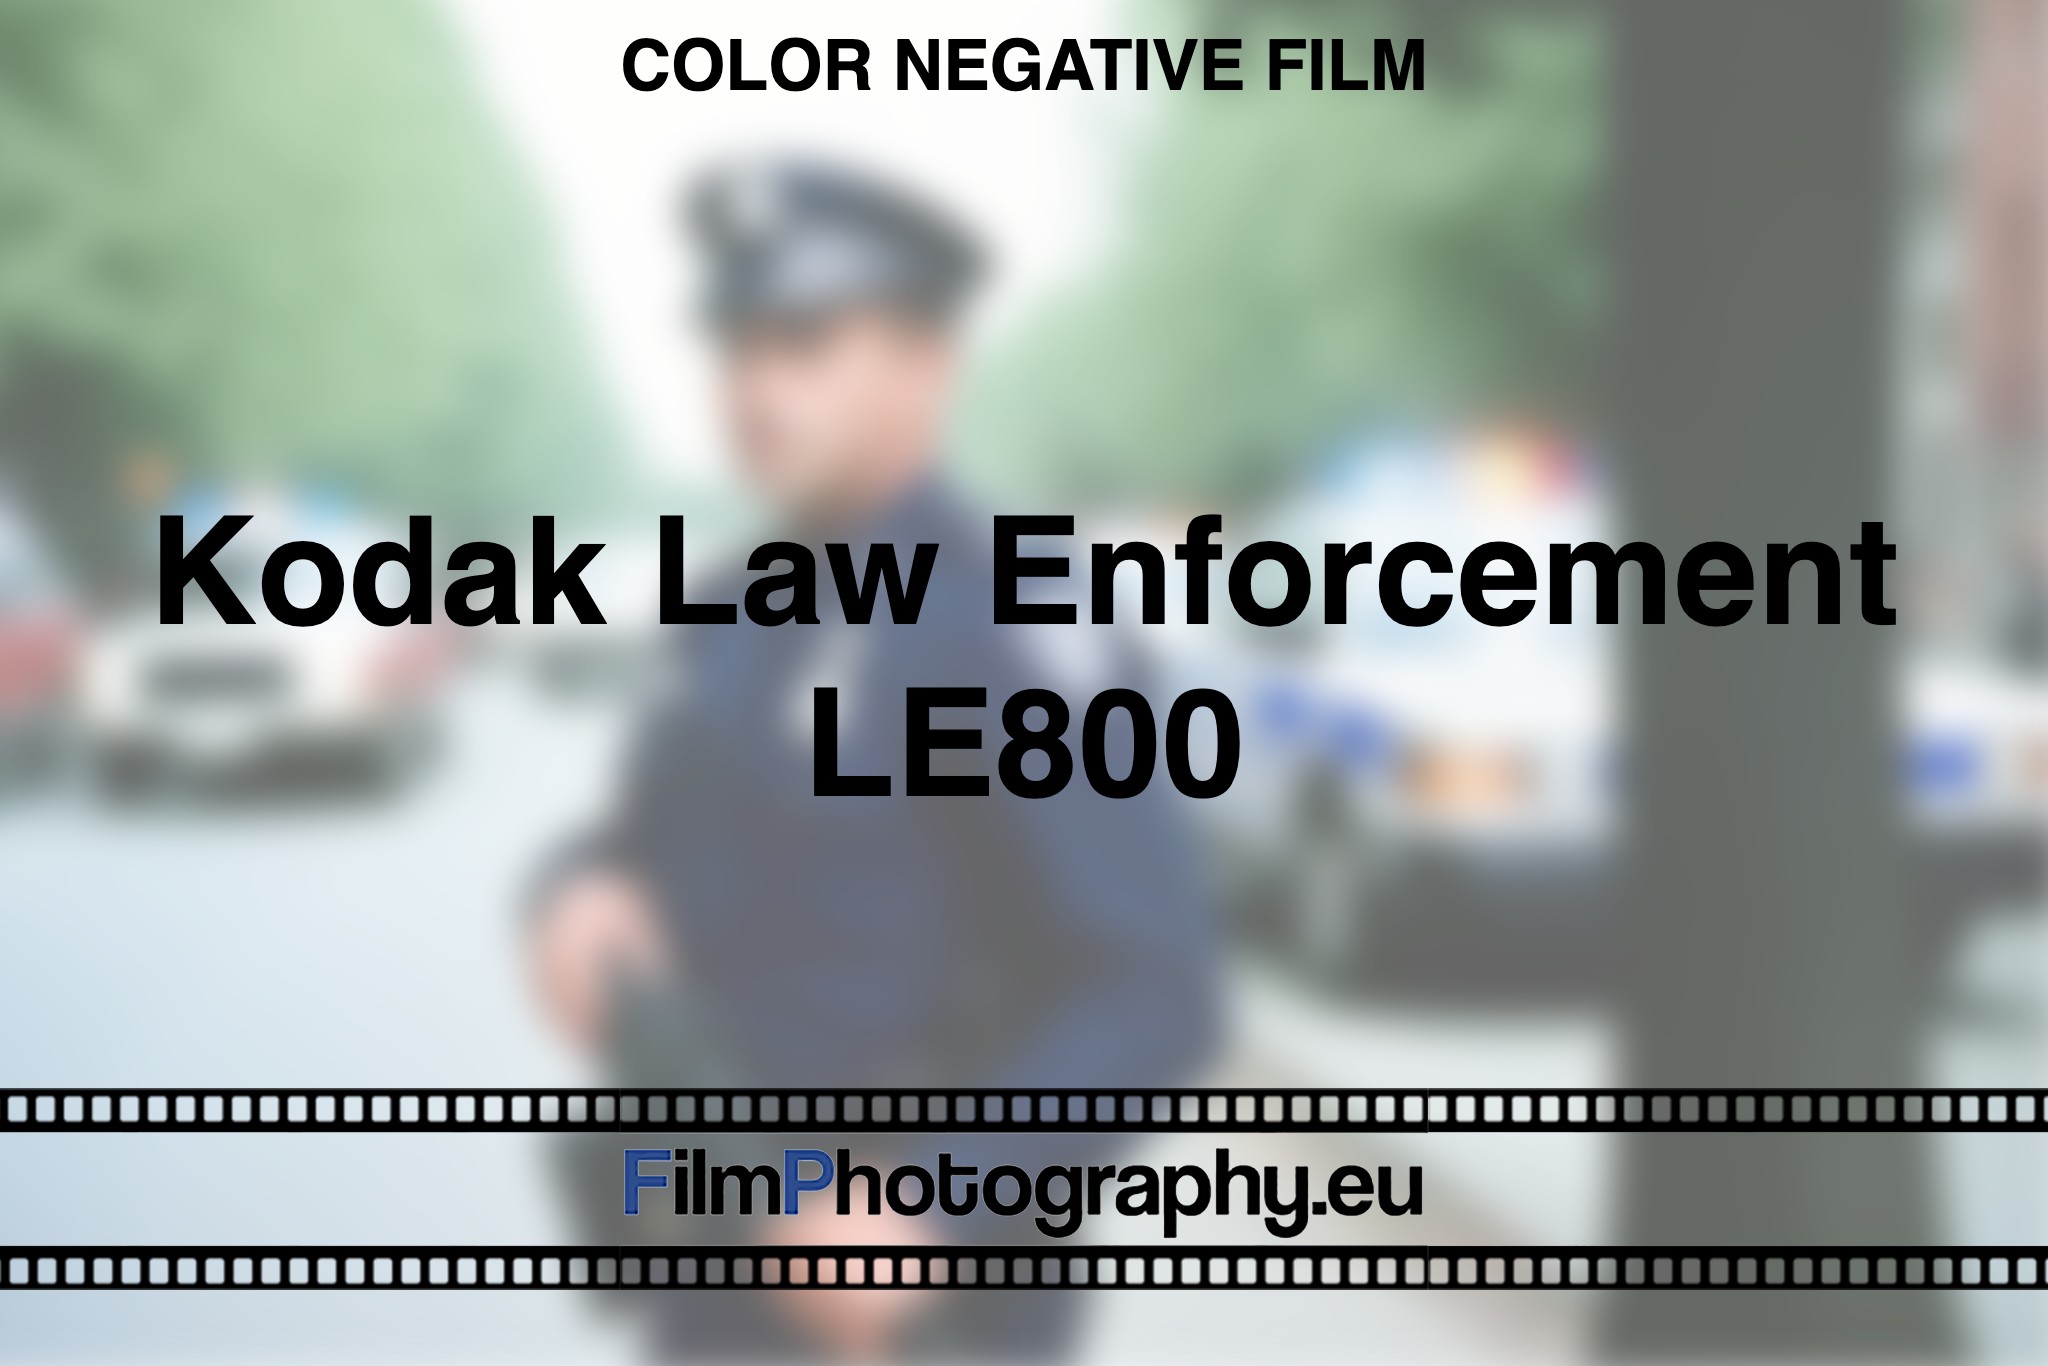 Kodak-Law-Enforcement-LE800-Color-negative-film-bnv